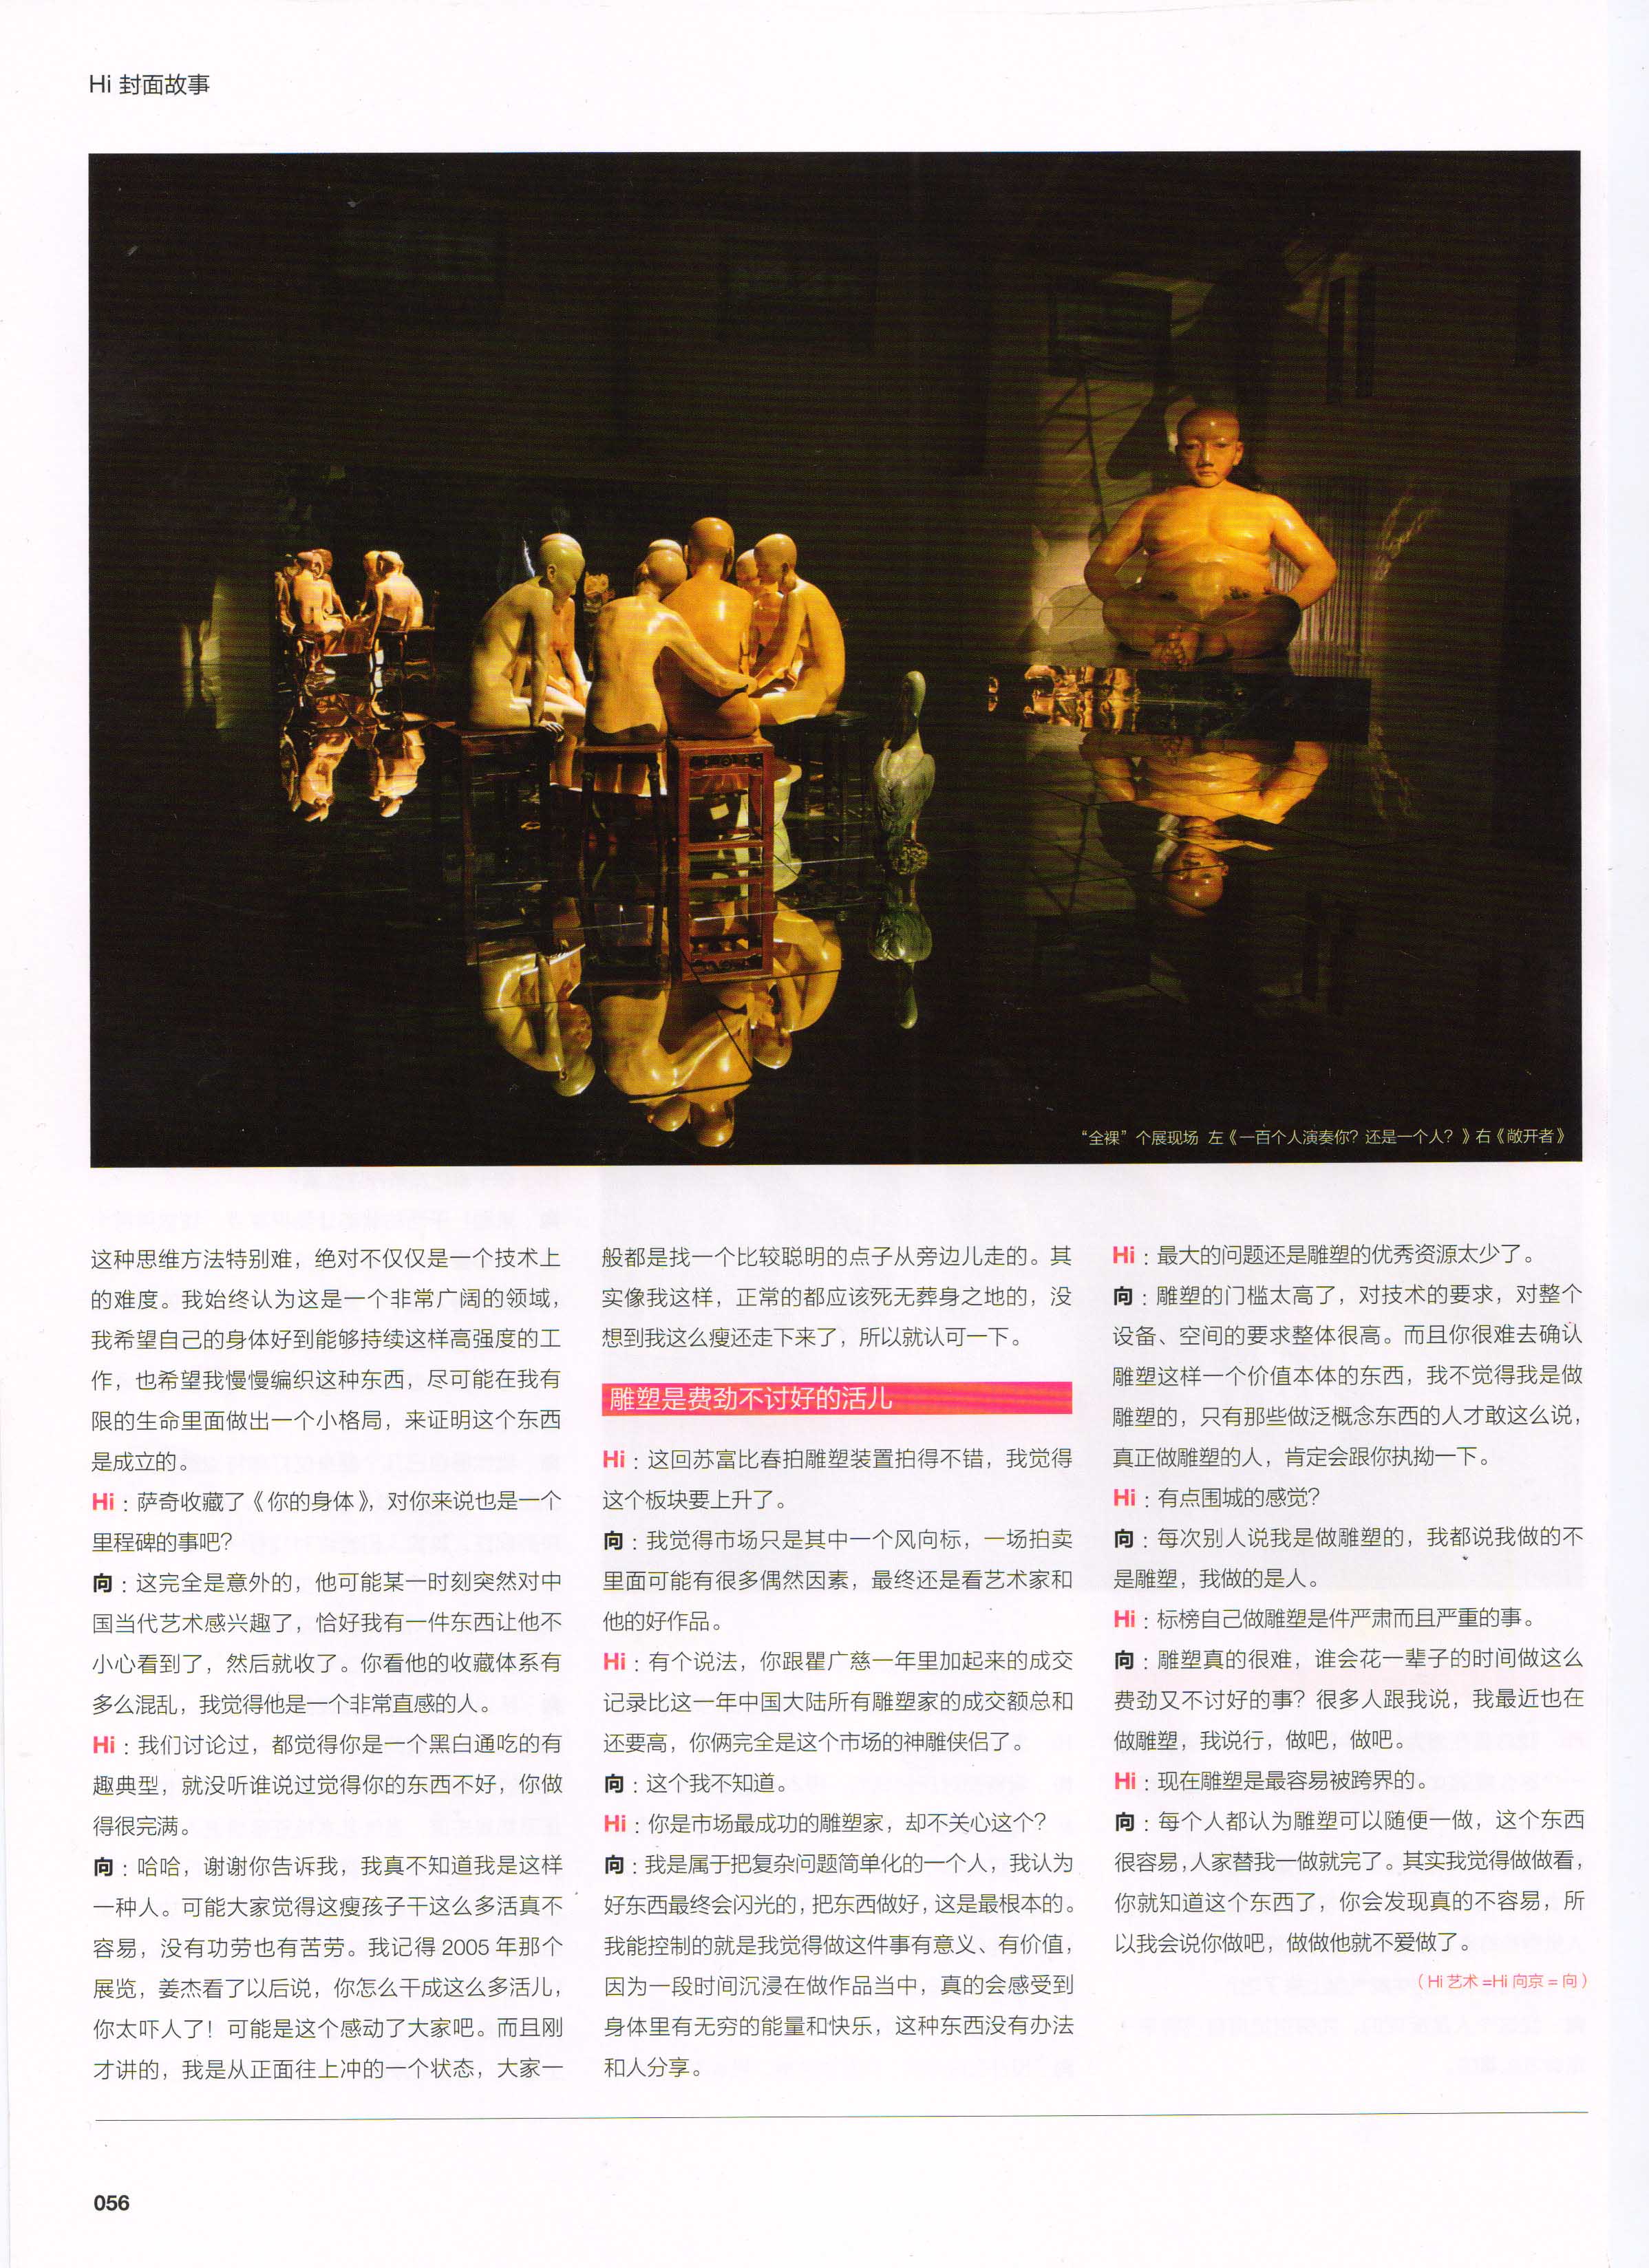 2009年第6期 Hi 艺术 雕塑封面专题《向京：从正面往上冲》p59-60 (2).jpg